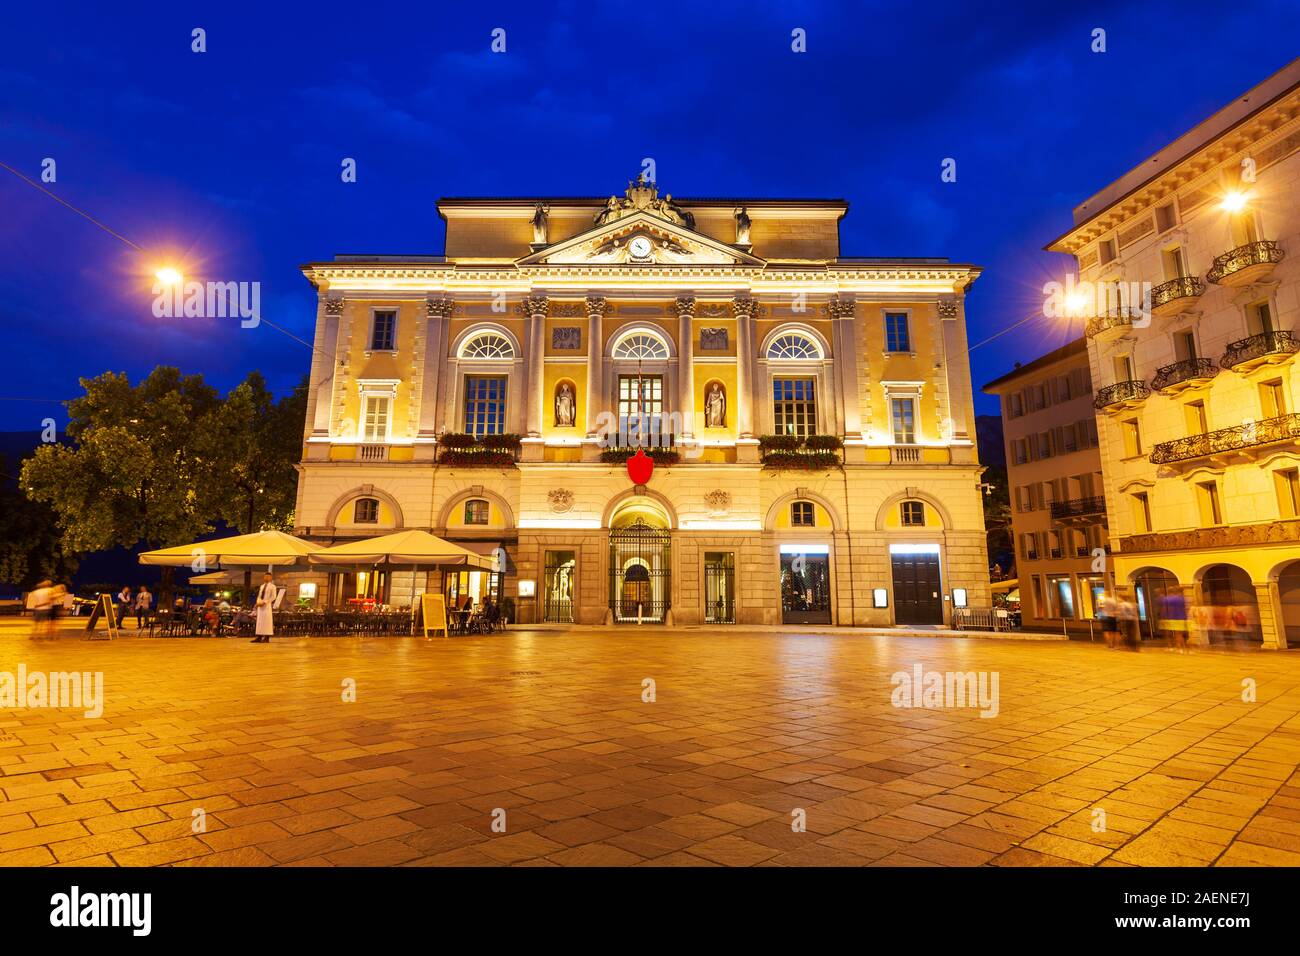 Municipio di Lugano is a Town Hall at the Piazza della Riforma Square in Lugano city in canton of Ticino, Switzerland Stock Photo